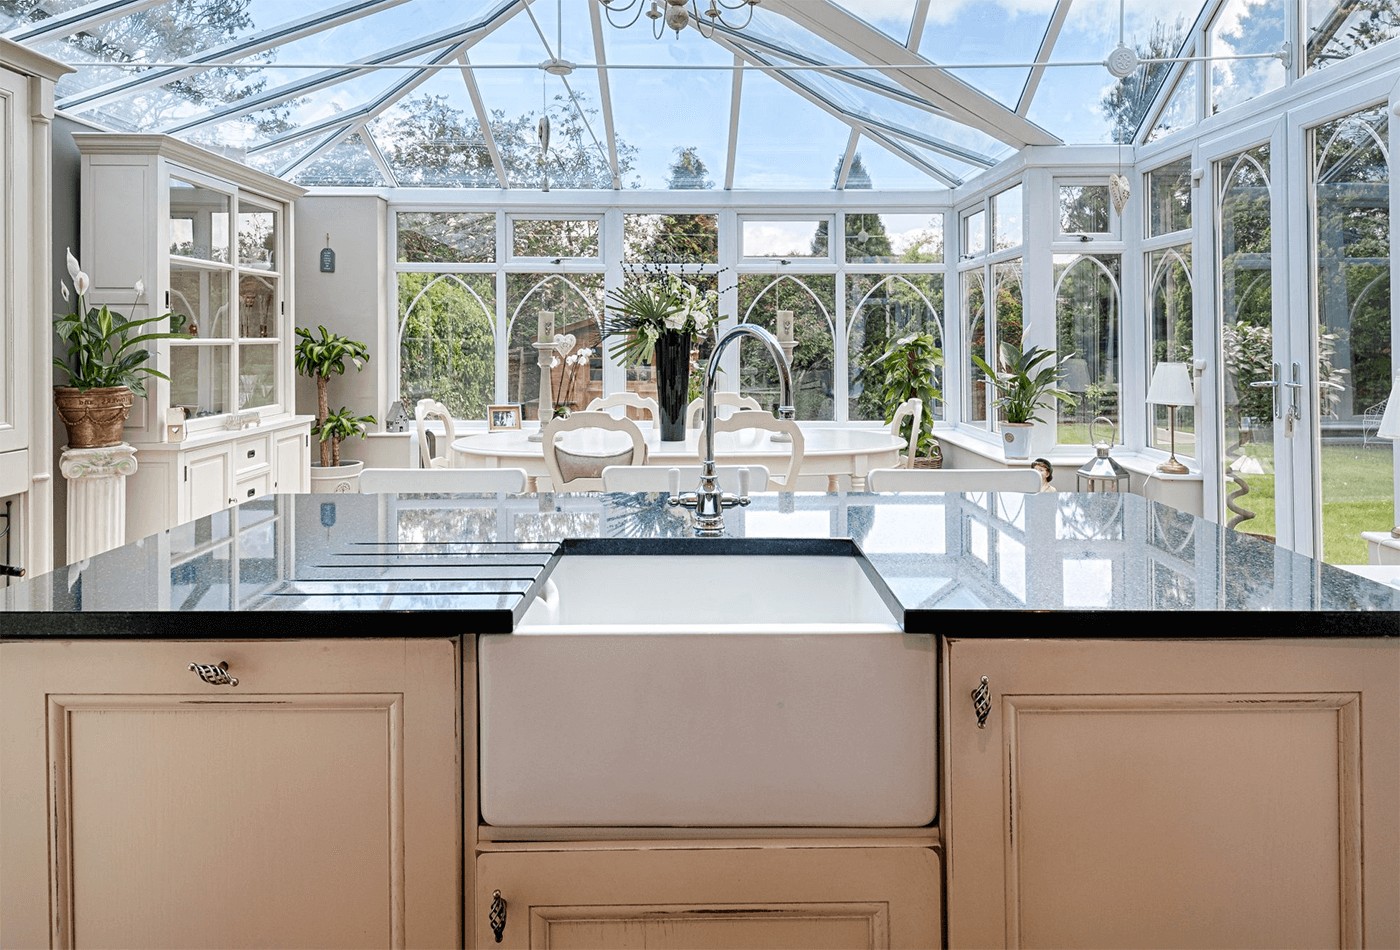 New kitchen conservatories